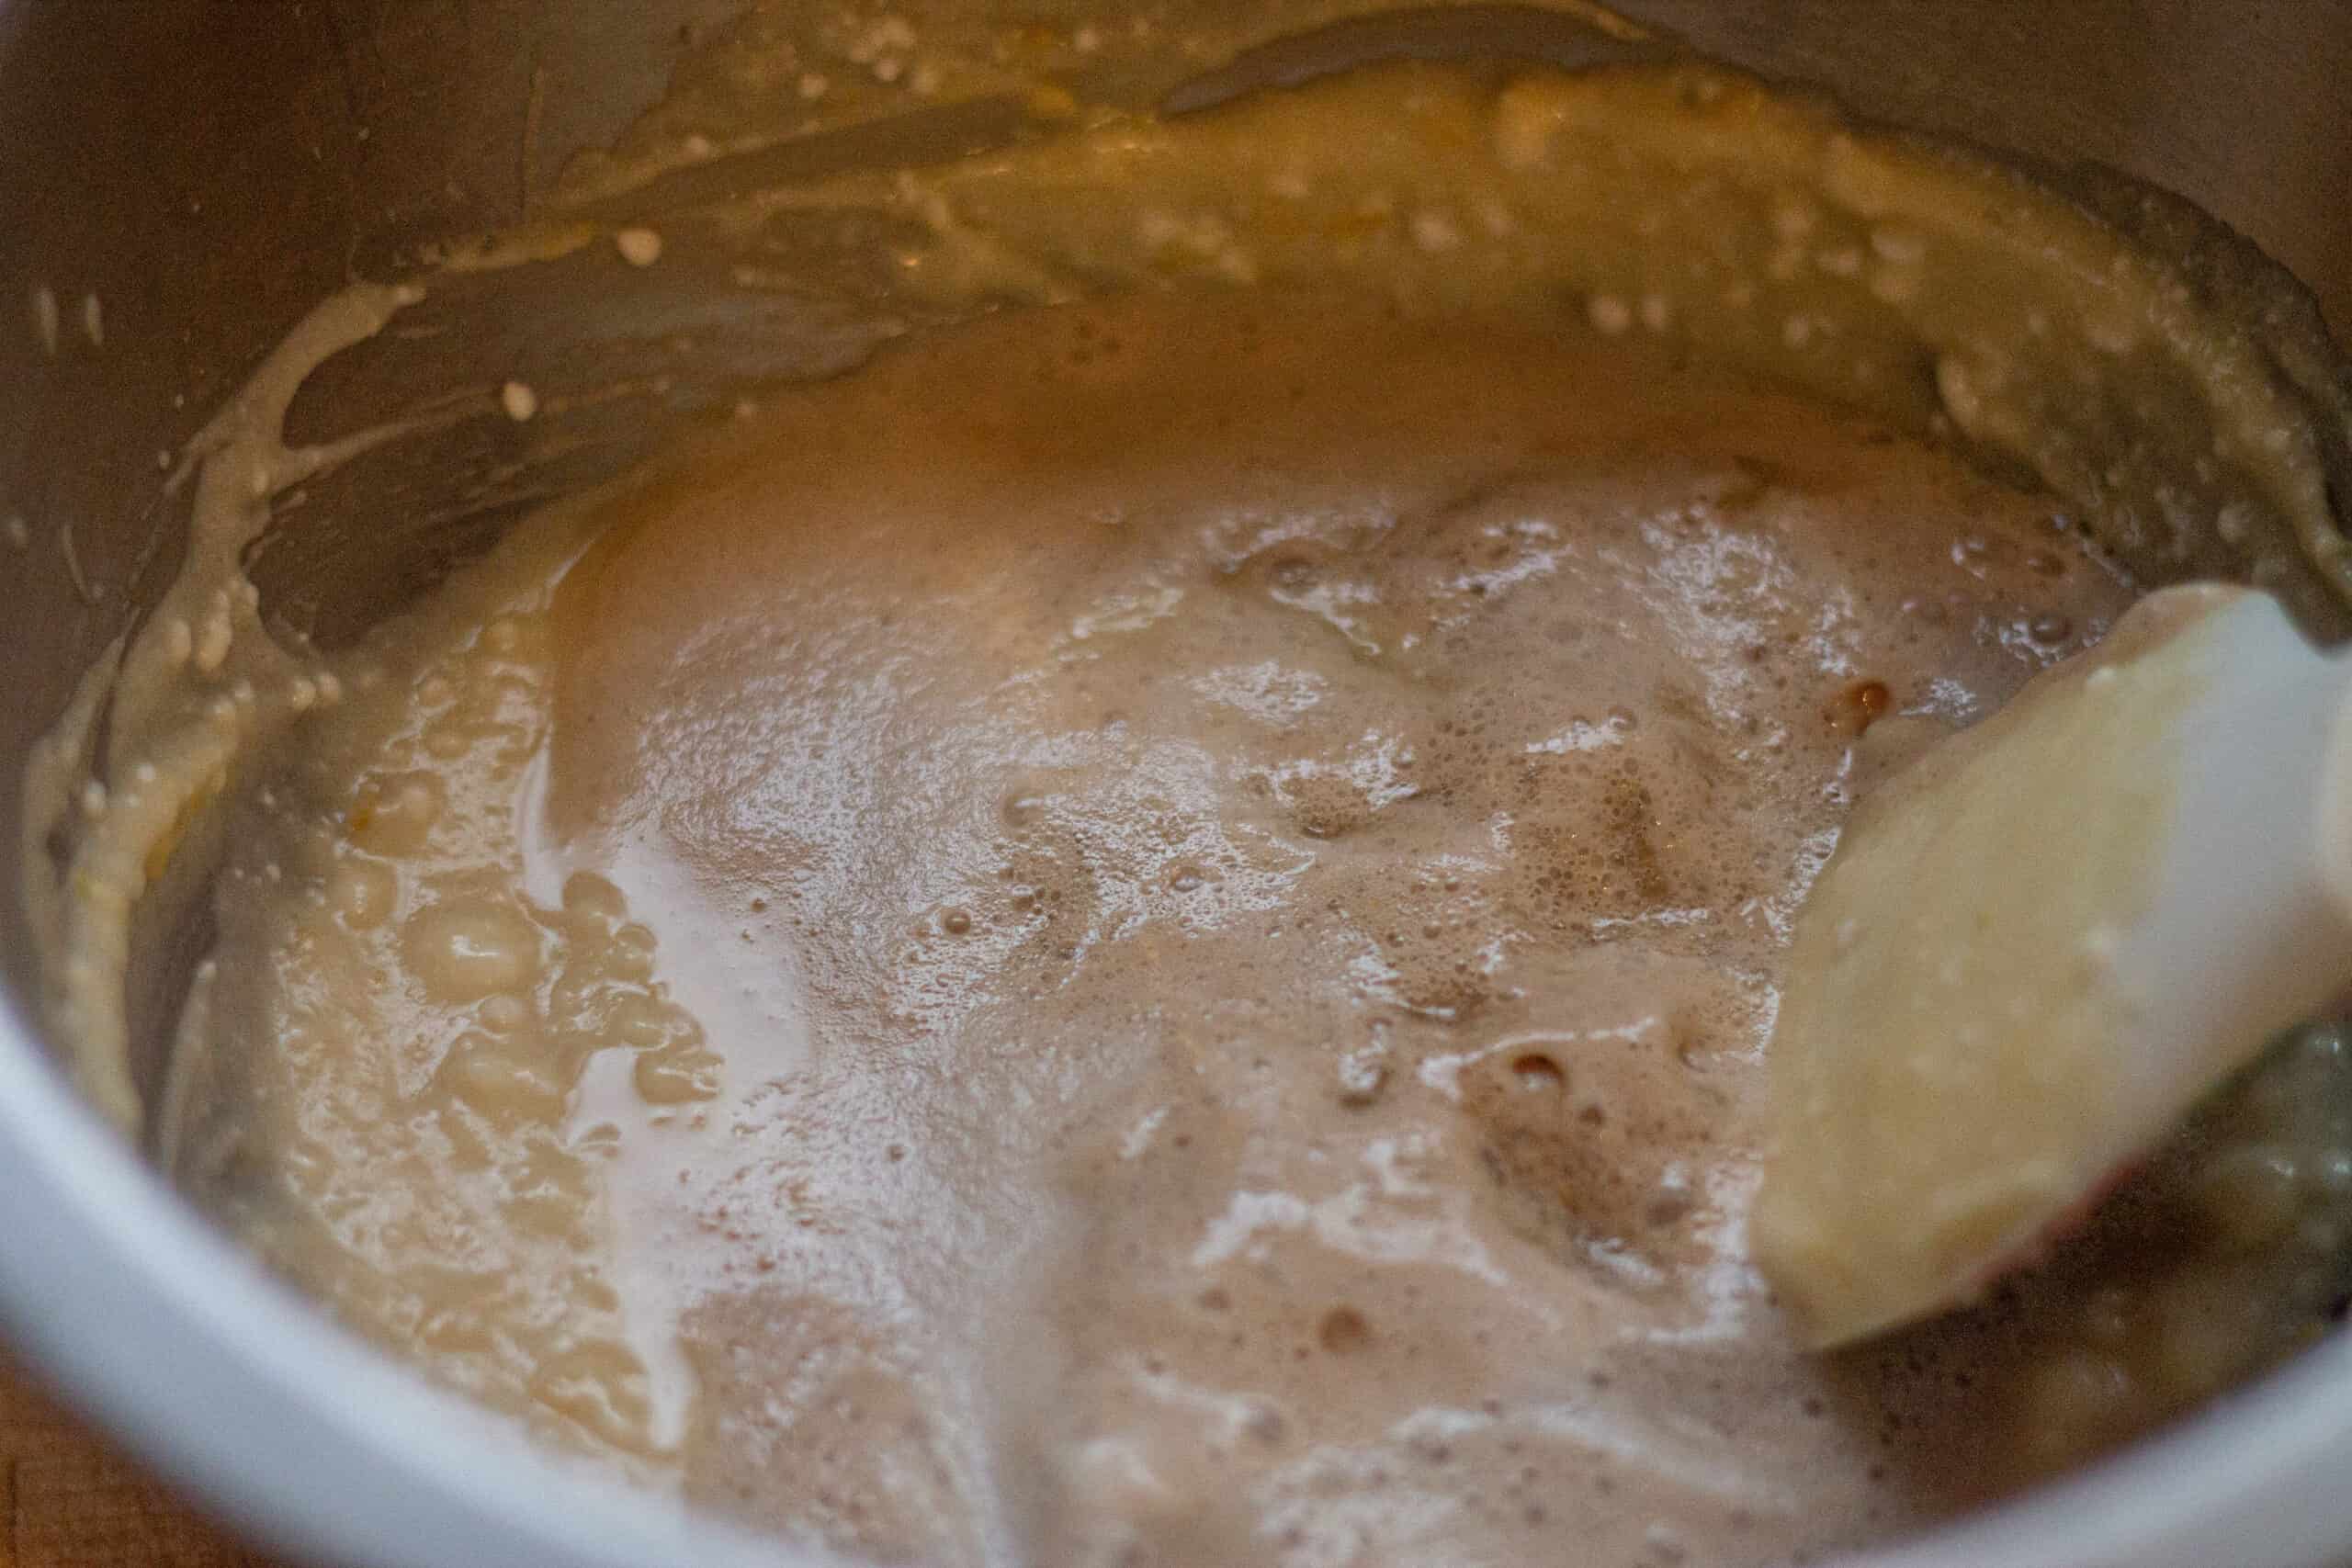 Adding yeast to pandoro mixture